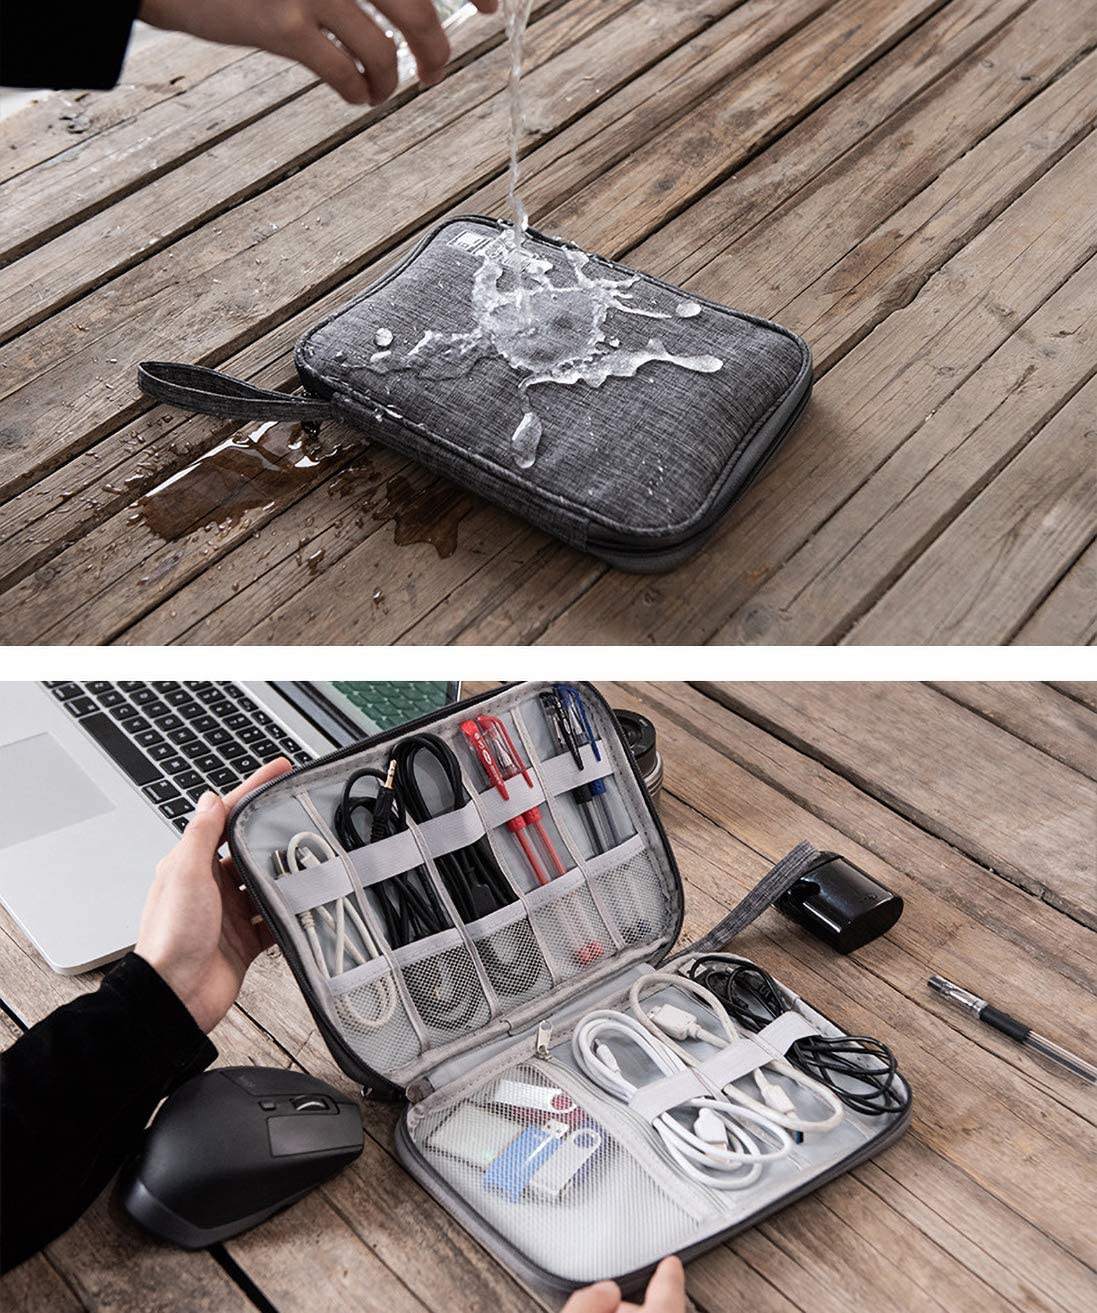 エレクトロニクス アクセサリー オーガナイザー バッグ 携帯電話アクセサリー ストレージ キャリング バッグ